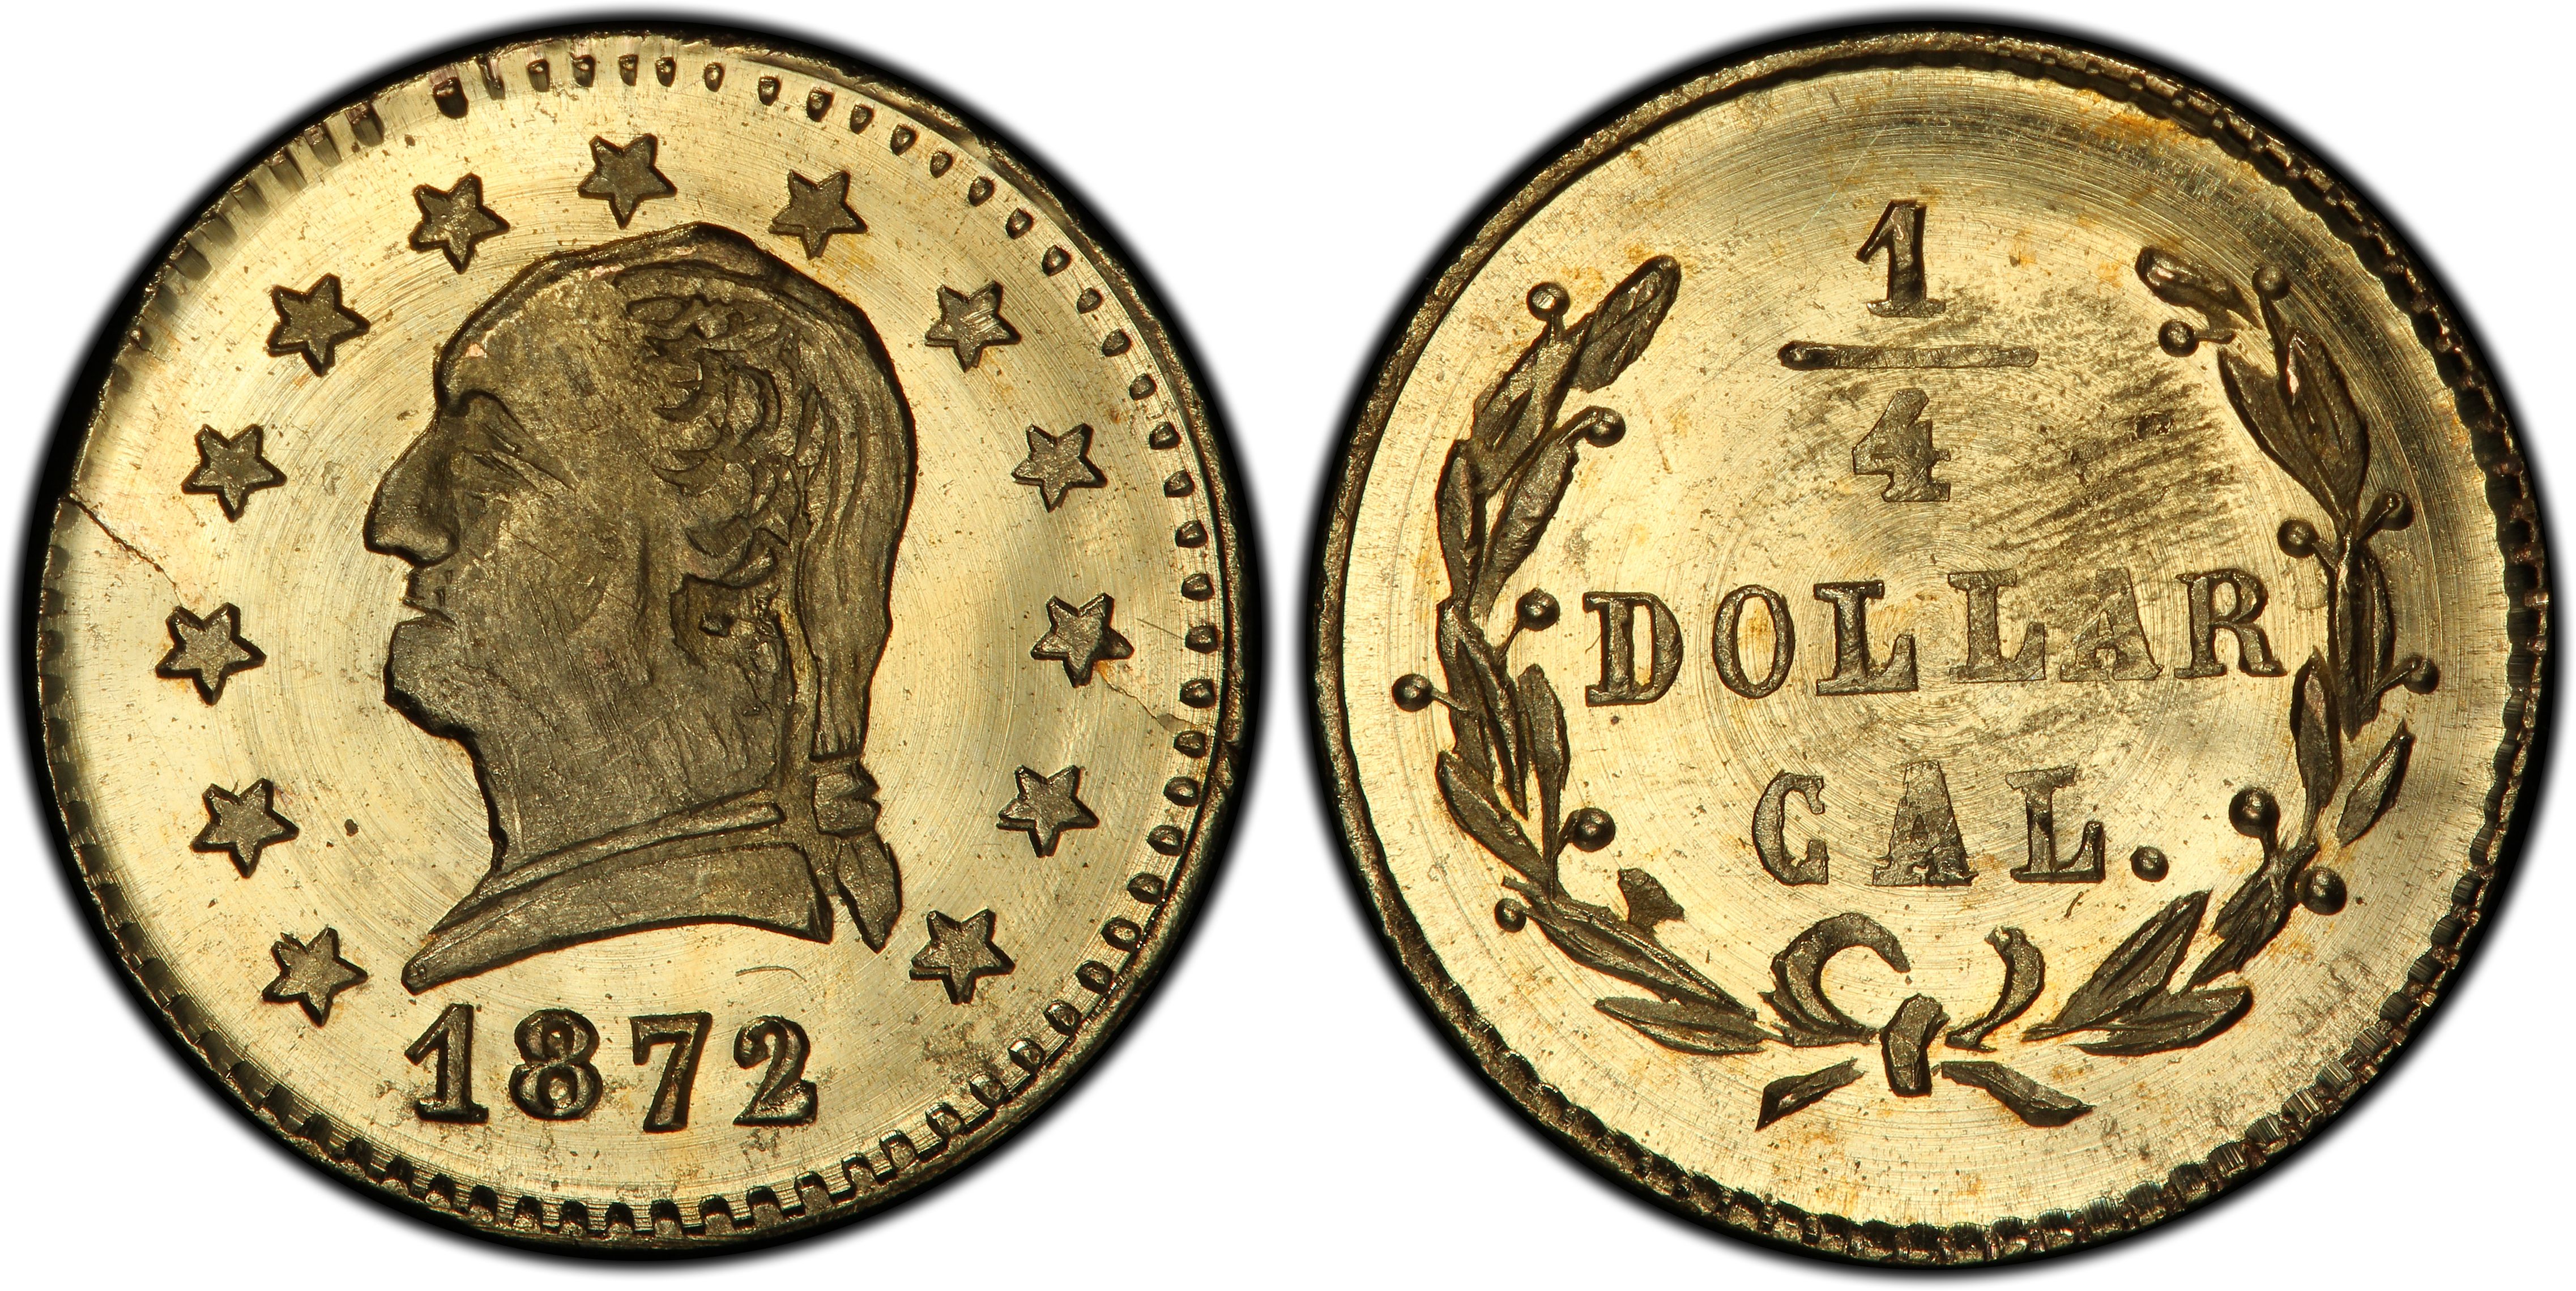 1872 Liberty Octagonal 50 Cent Gold MS-62 PCGS (BG-913) - SKU